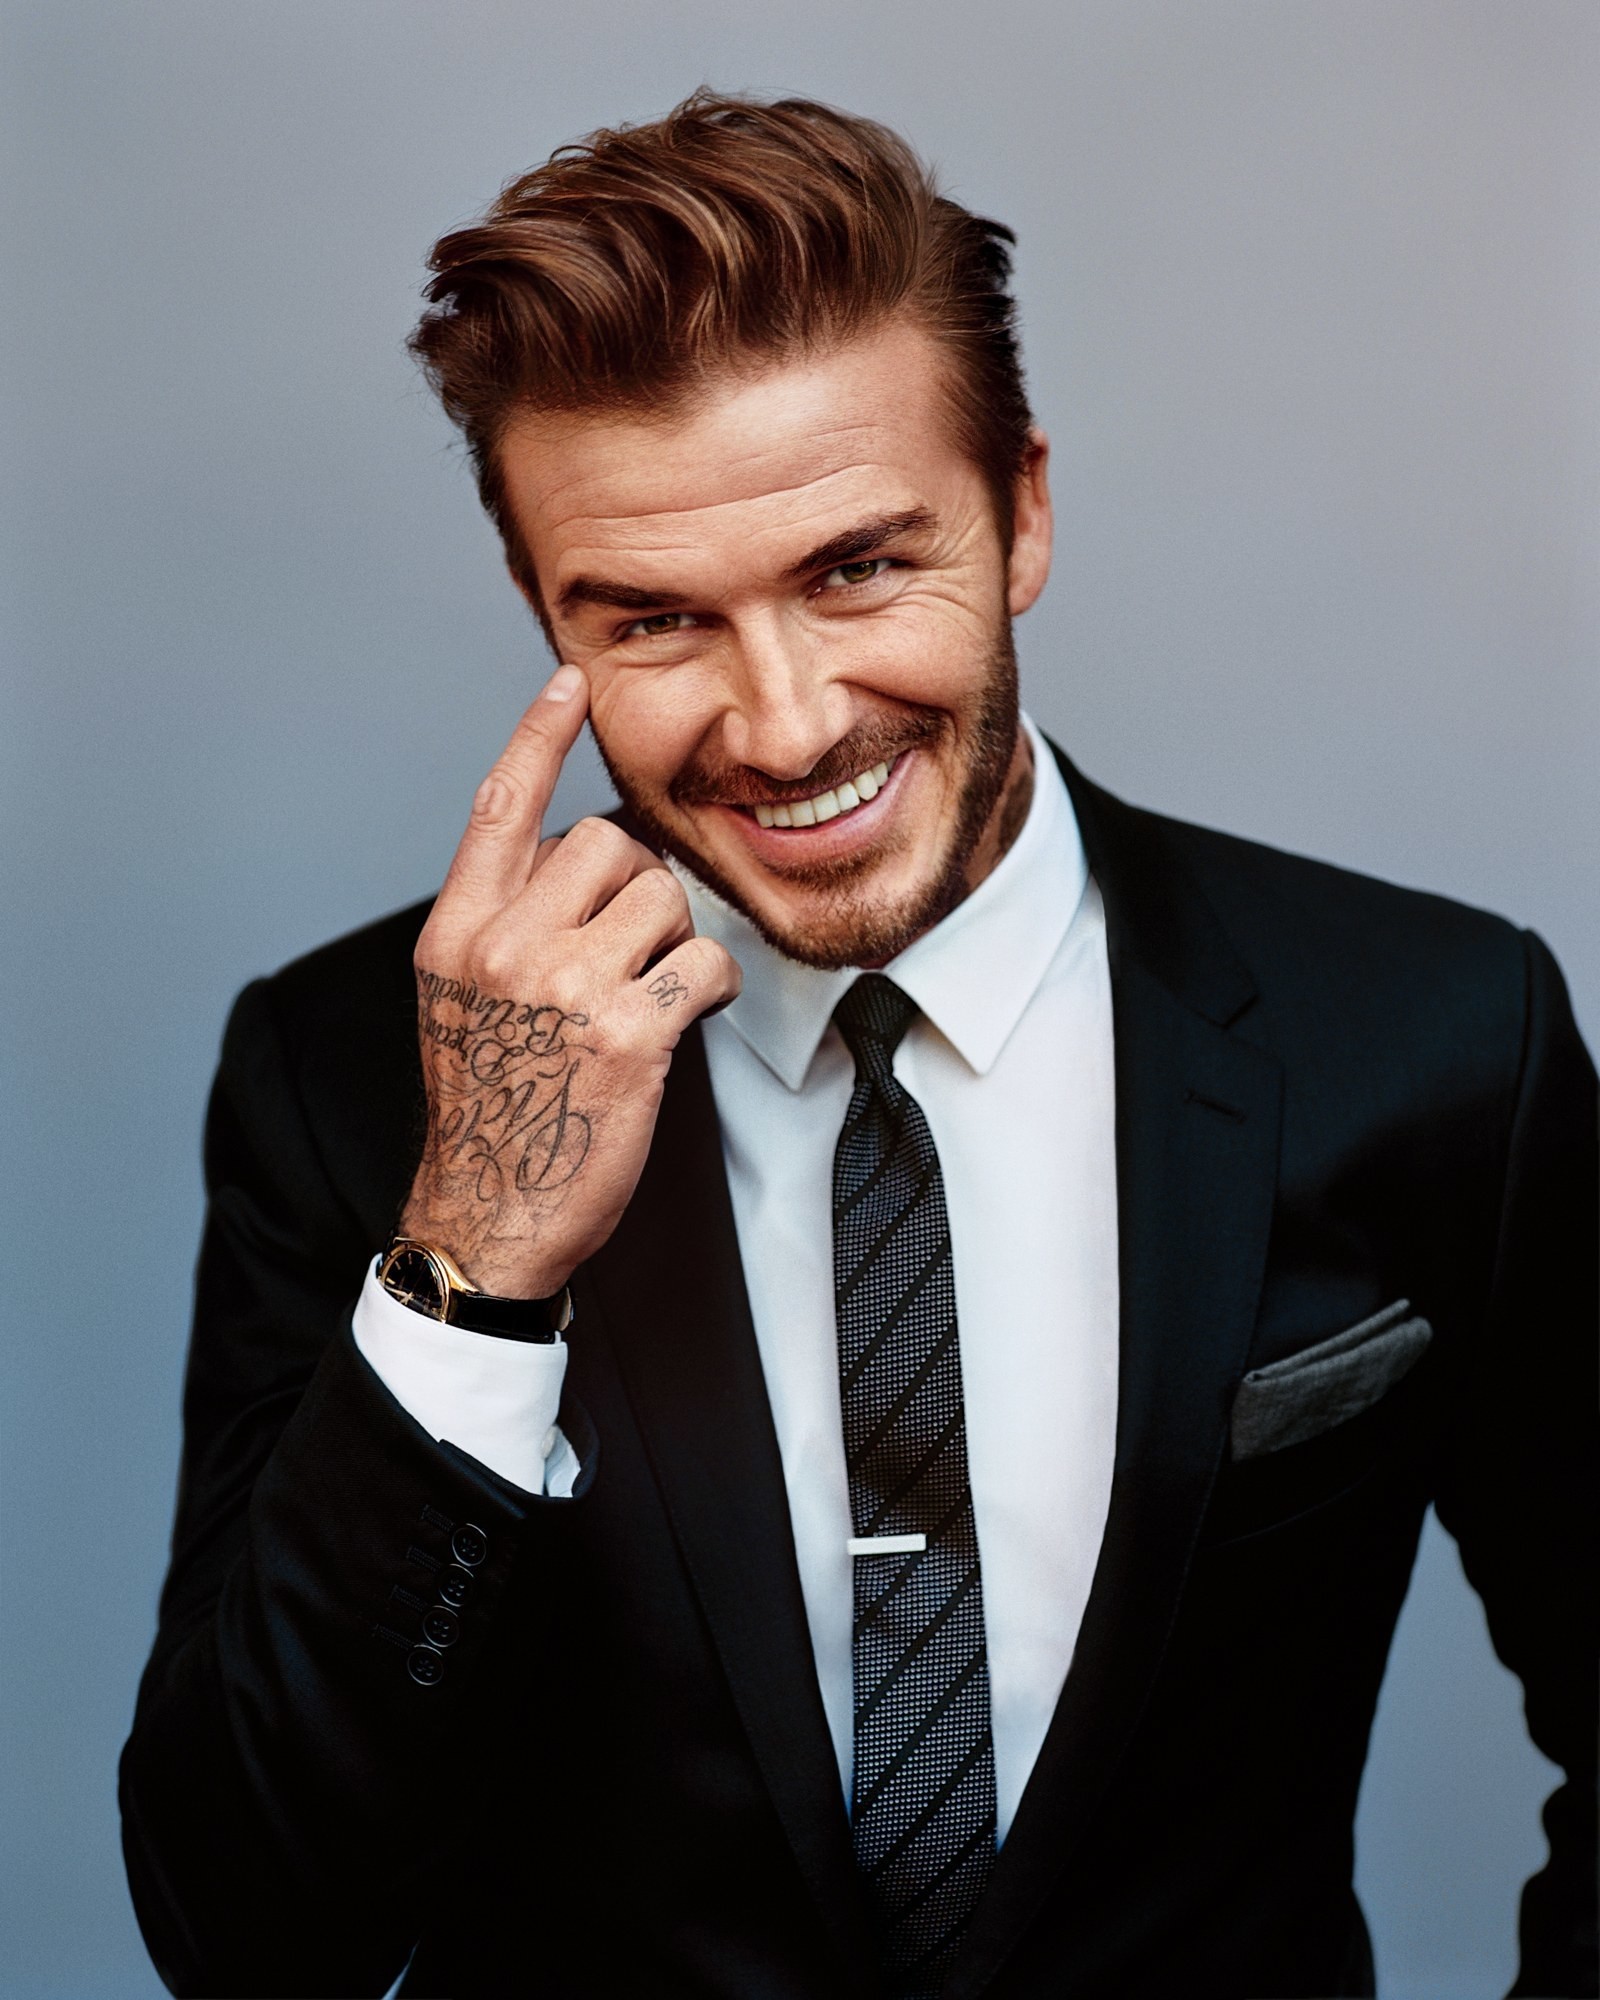 12 kiểu tóc đẹp hút hồn làm lên thương hiệu David Beckham